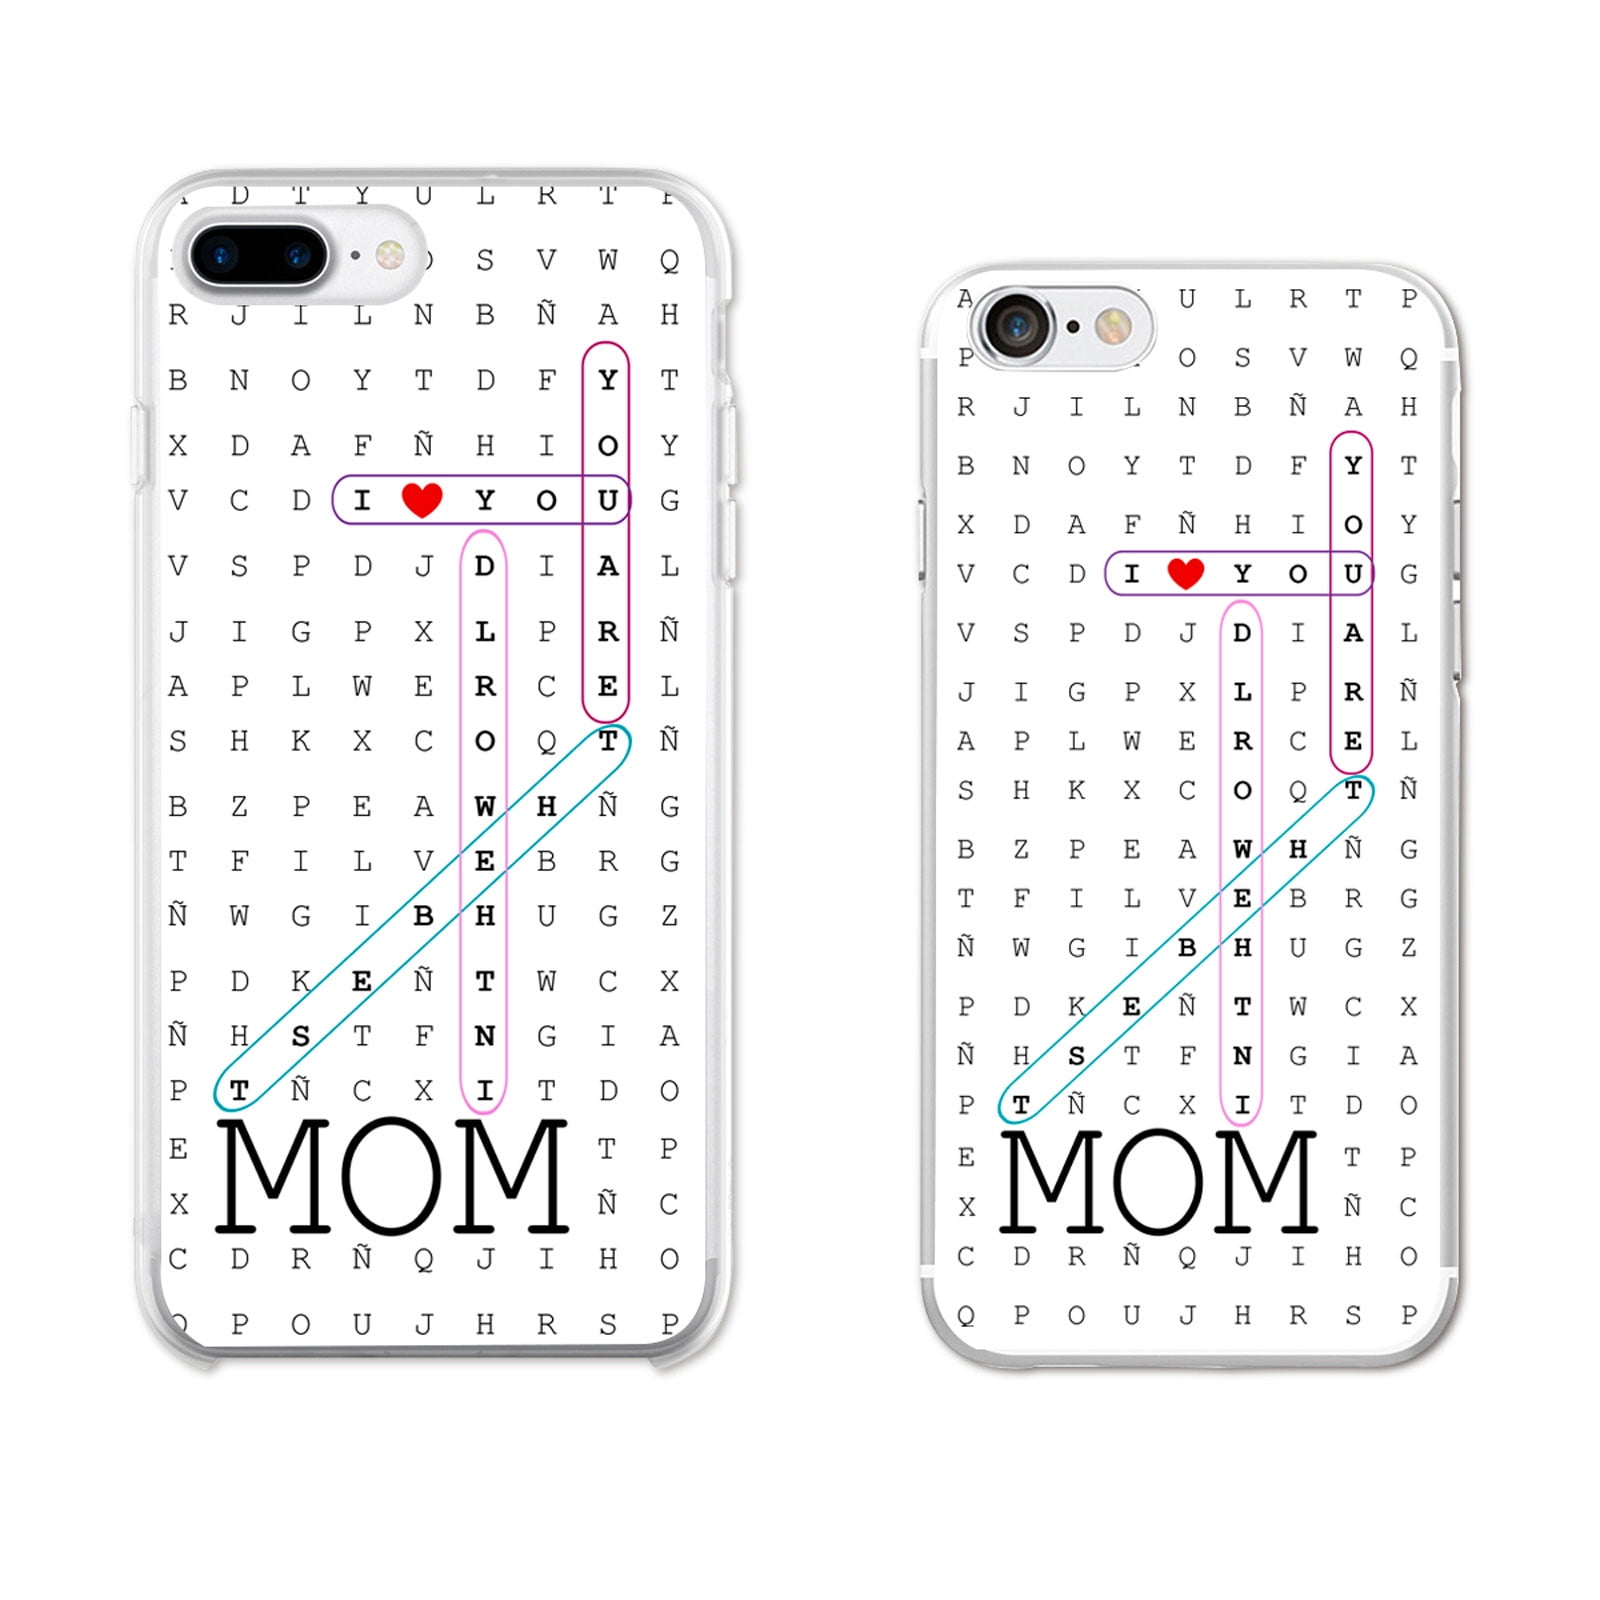 Ish Original Official Love You Mom Phone Case Cover Slim Soft Tpu For Apple Iphone 7 Plus Walmart Com Walmart Com